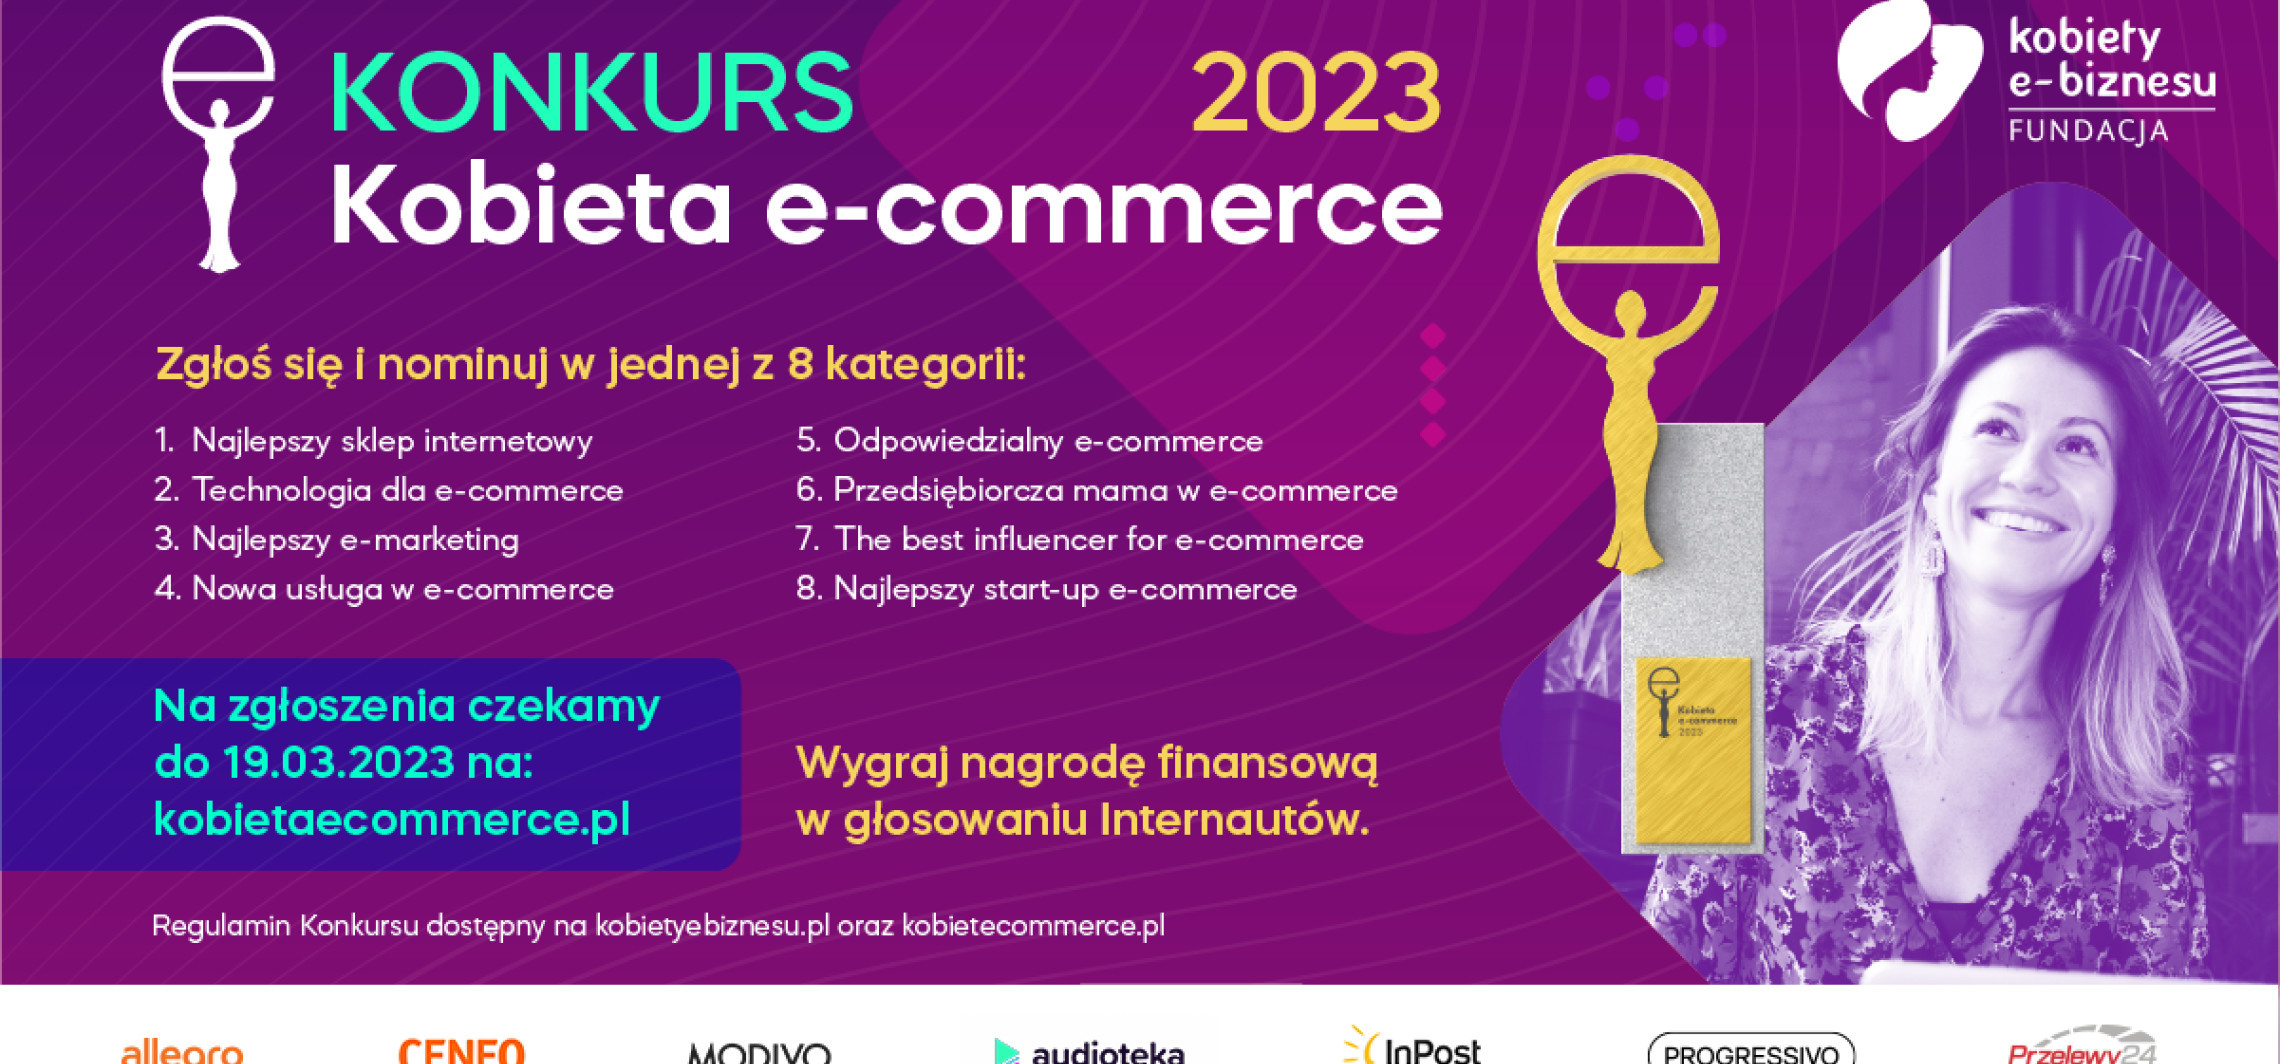 Kraj - Ruszył ogólnopolski konkurs Kobieta e-commerce 2023 promujący kobiecą przedsiębiorczość i start-upy